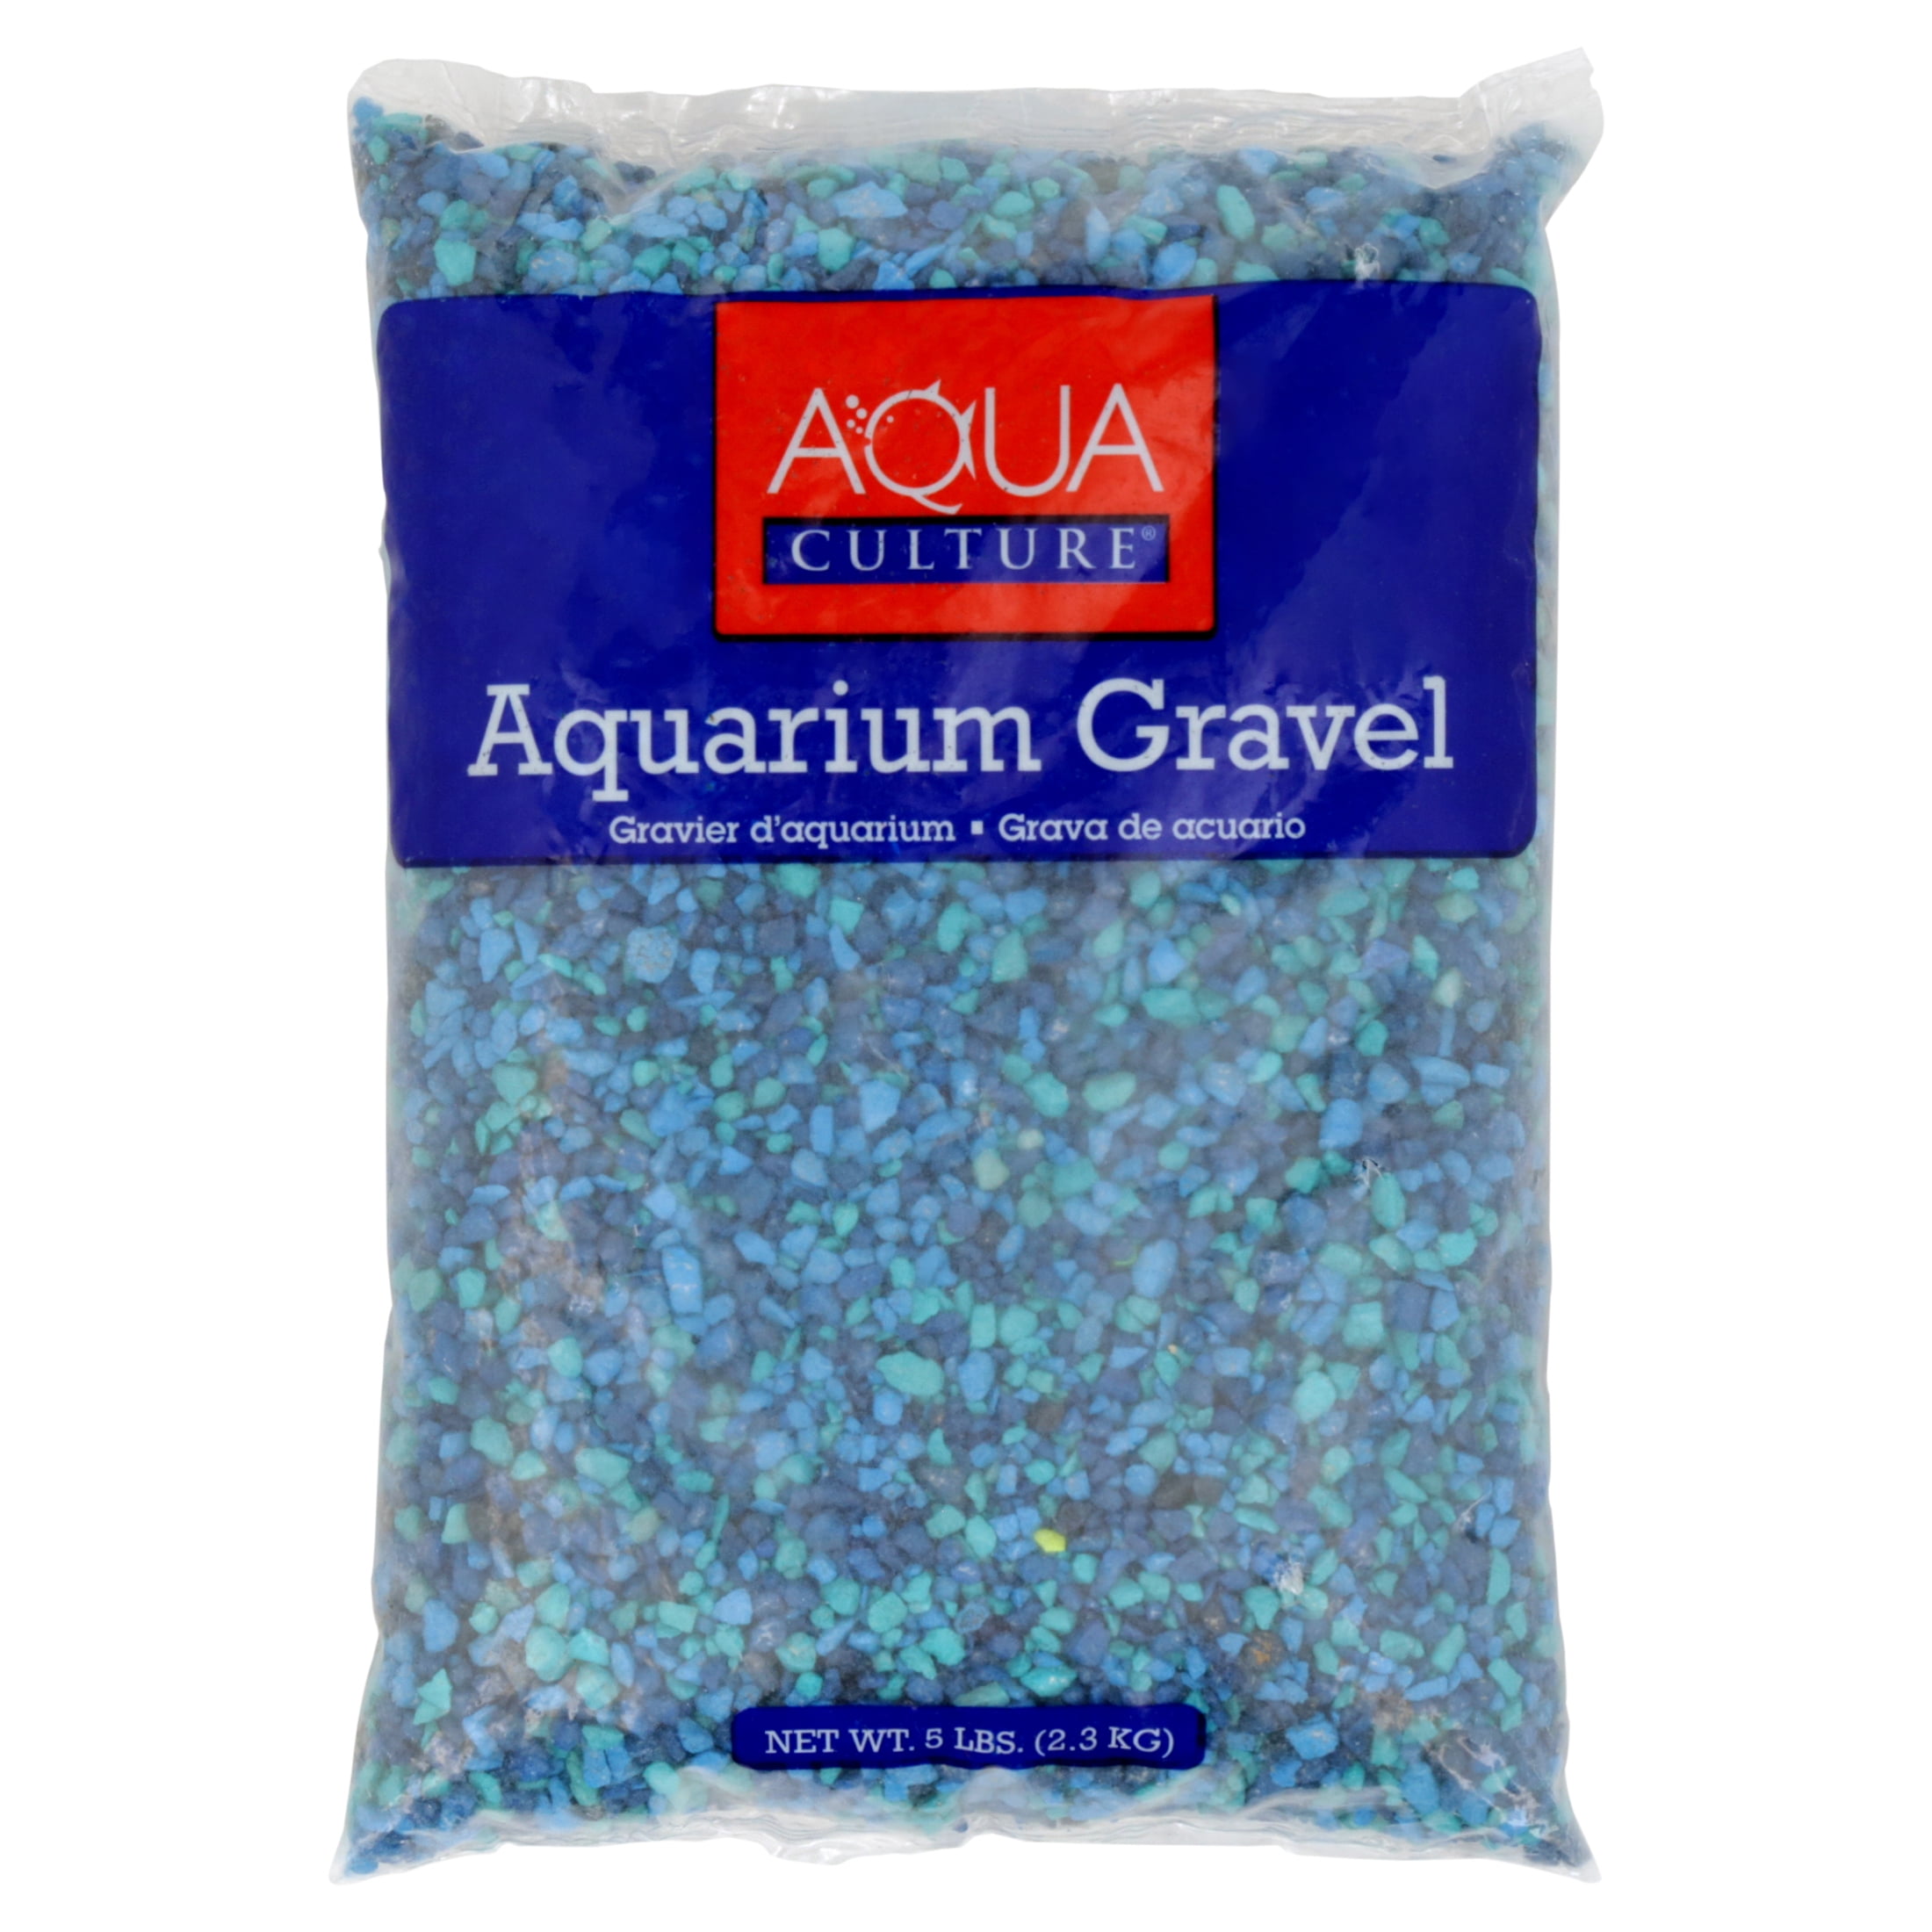 Aqua Culture Aquarium Gravel, Blue, 5 lb